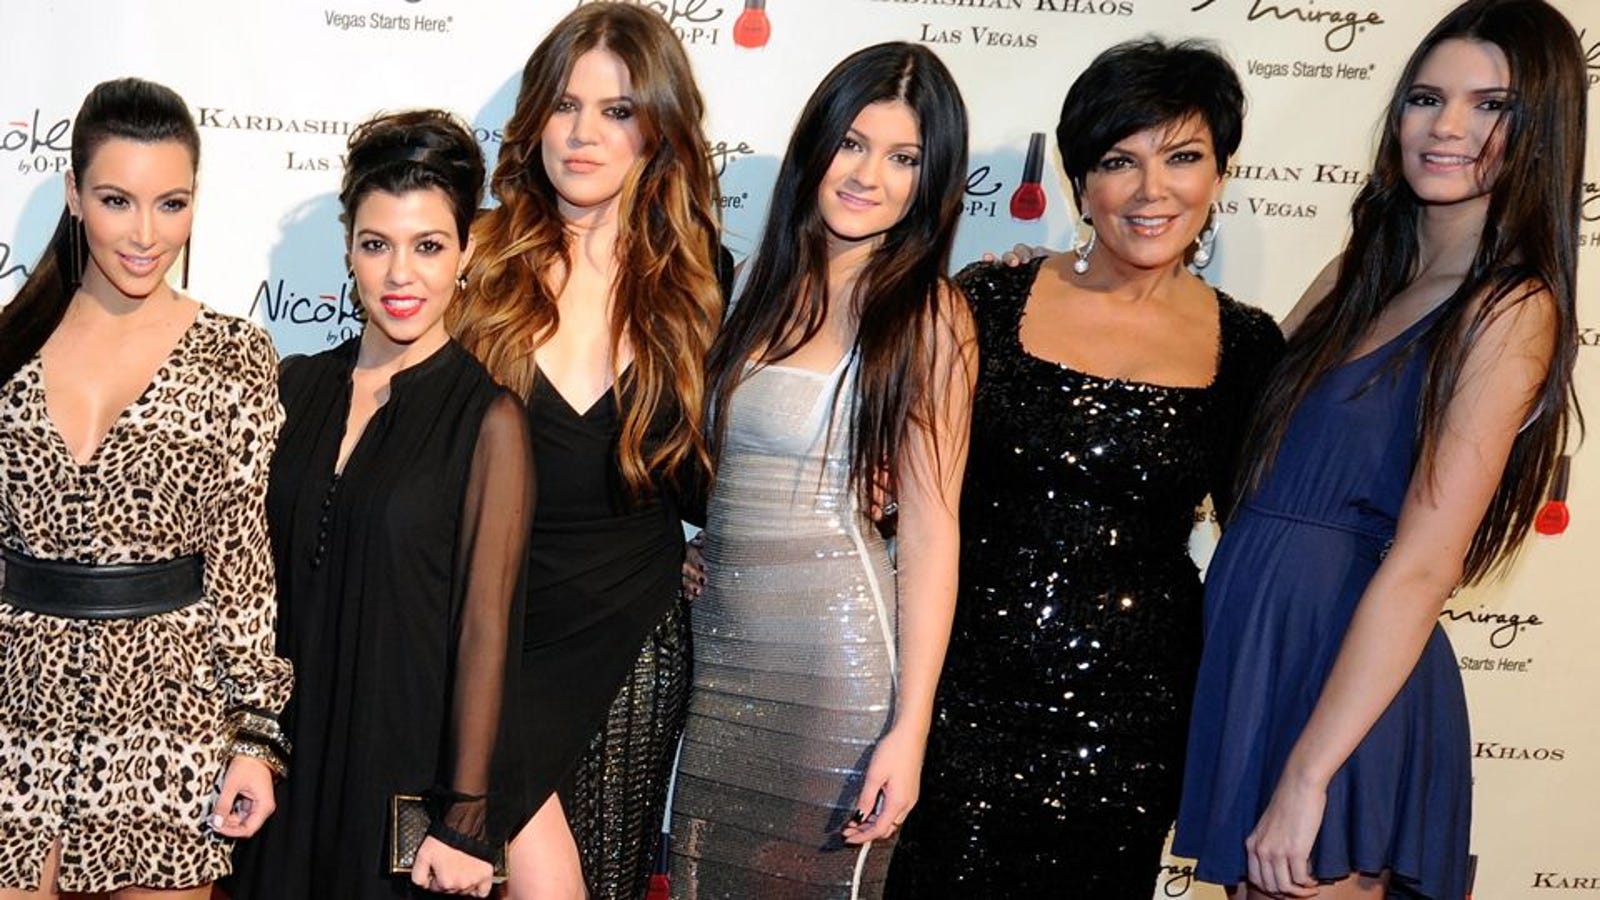 Kardashians Sue Over Sweatshop Allegations [Updated]